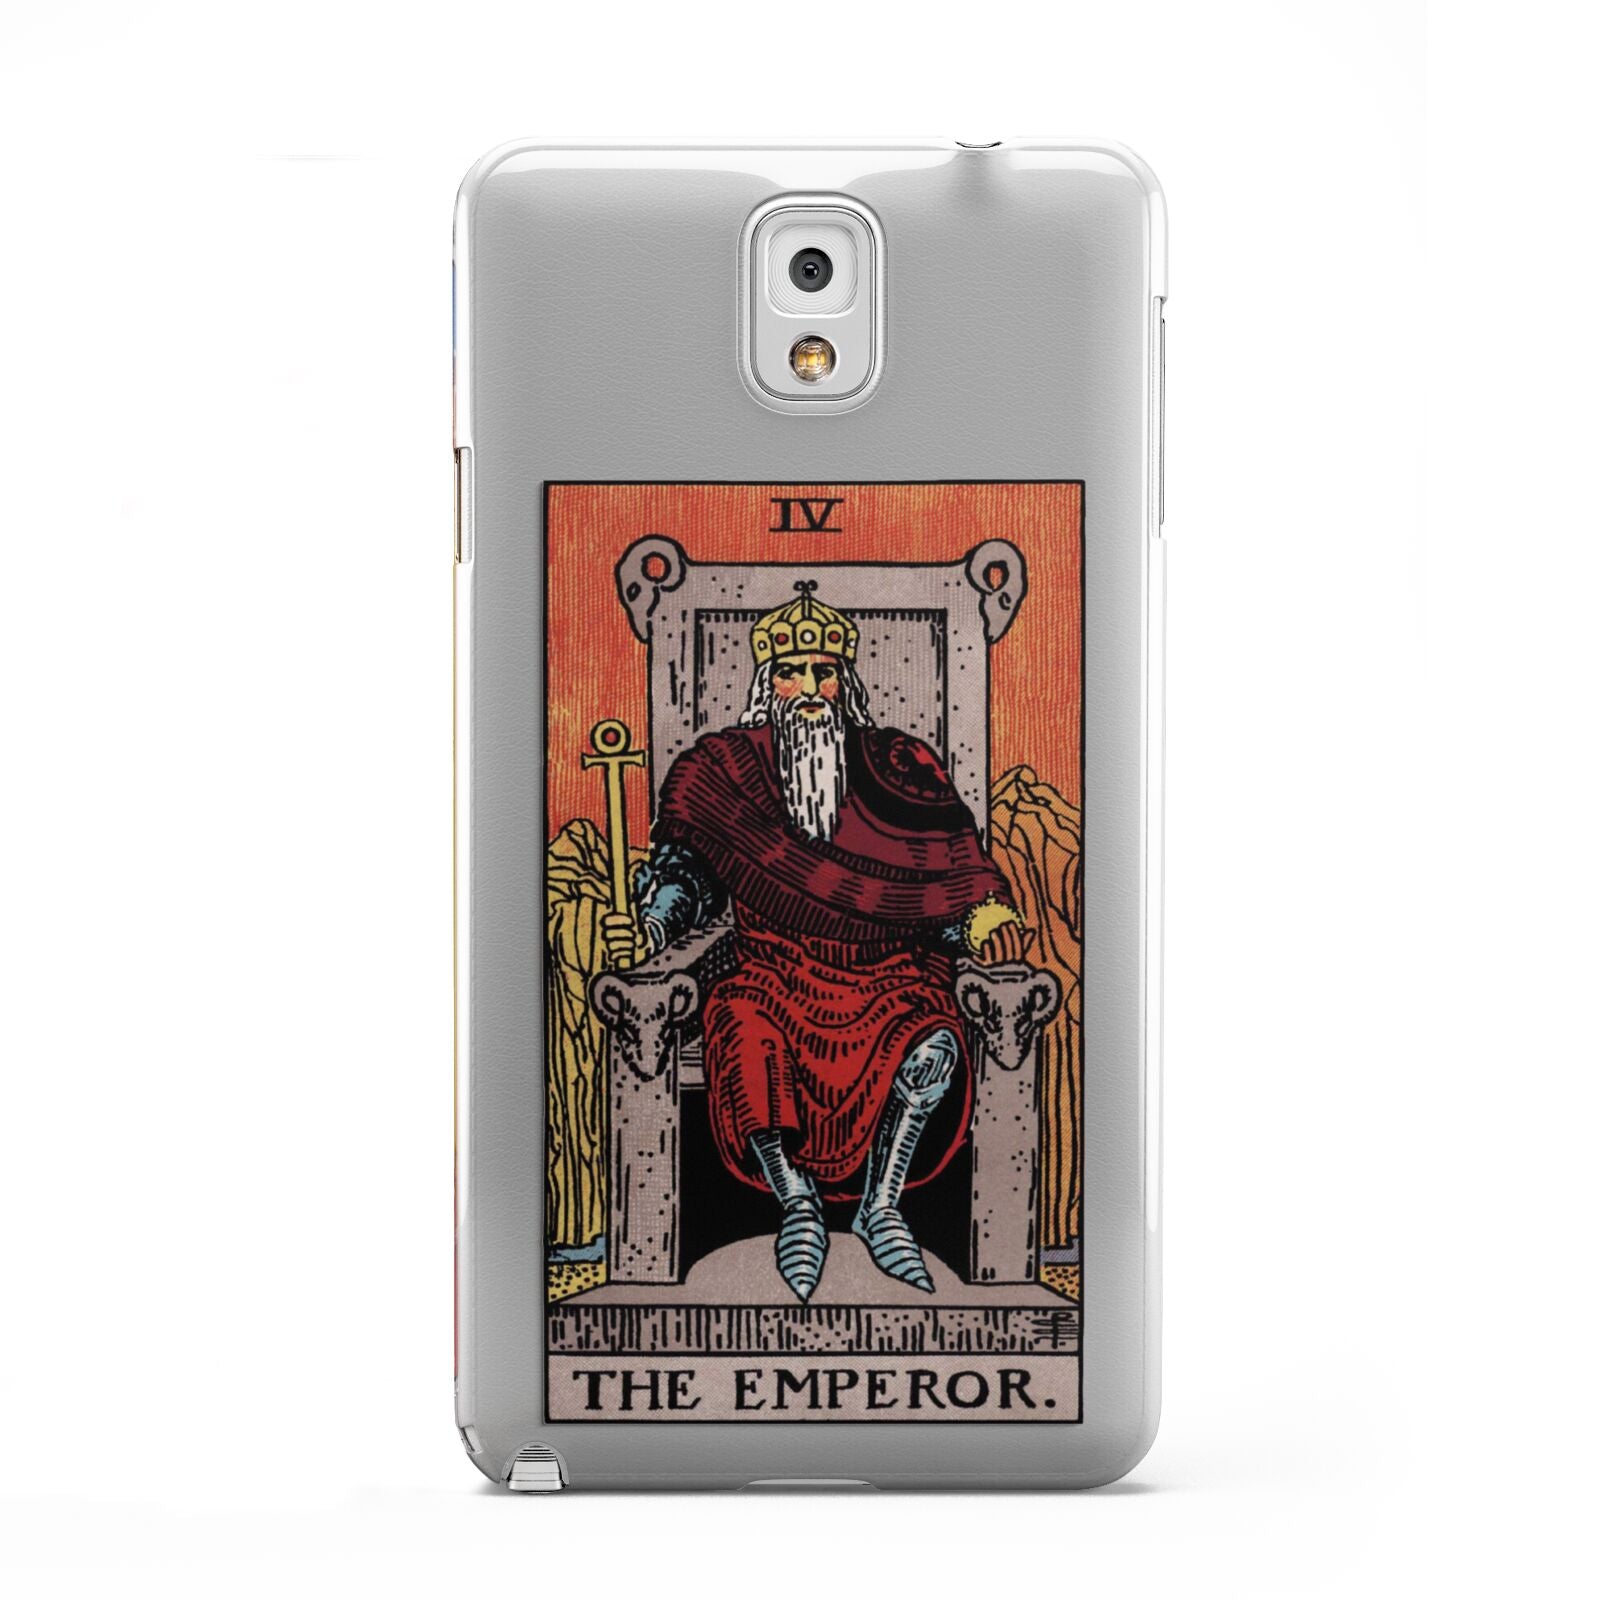 The Emperor Tarot Card Samsung Galaxy Note 3 Case